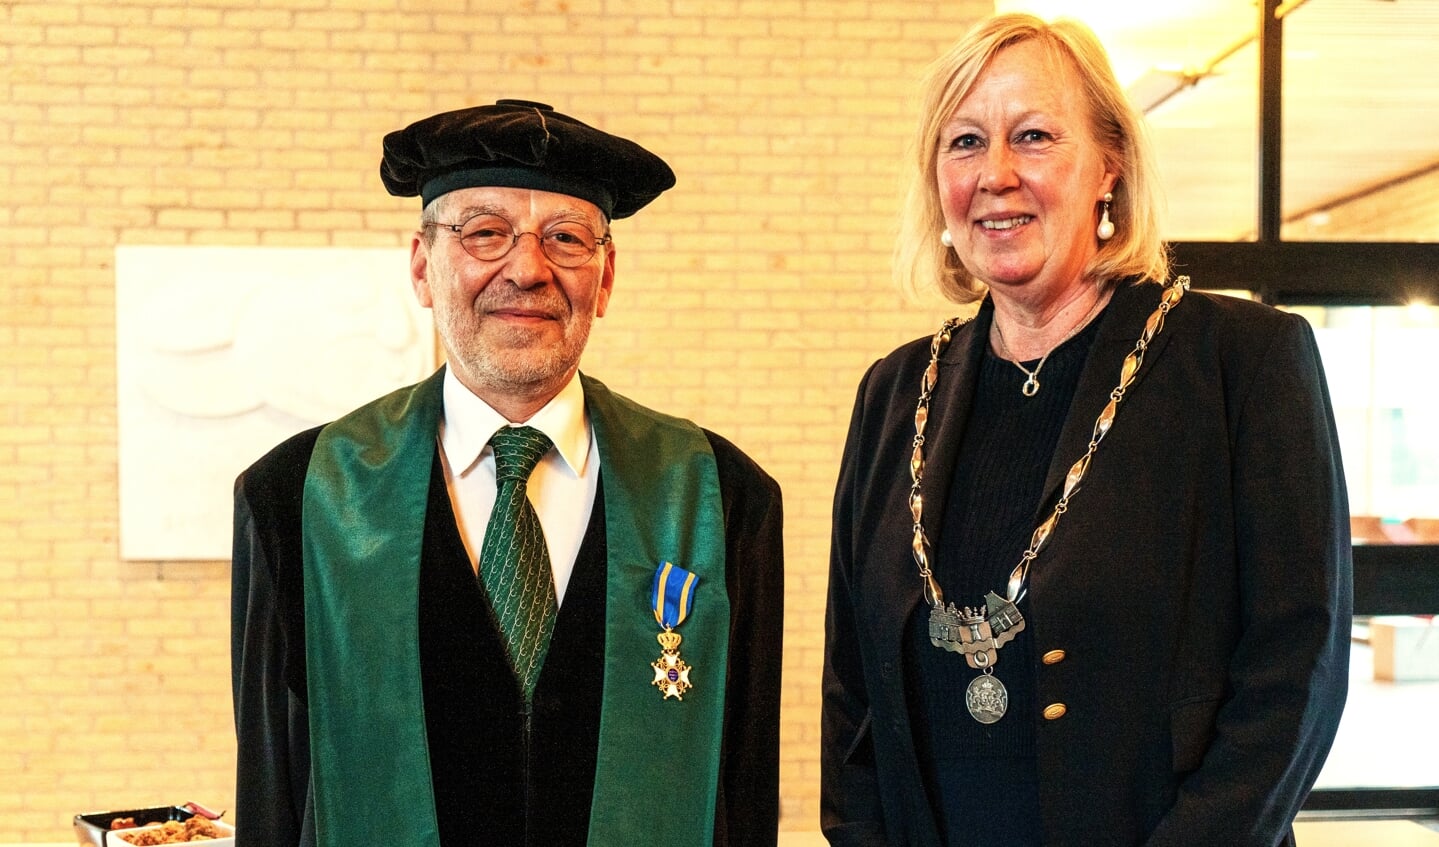 Decorandus prof. dr. Gabriel Krestin en loco- burgemeester Astrid van Eekelen bij de uitreiking van de hoge Koninklijke onderscheiding (foto: Frank van der Panne).